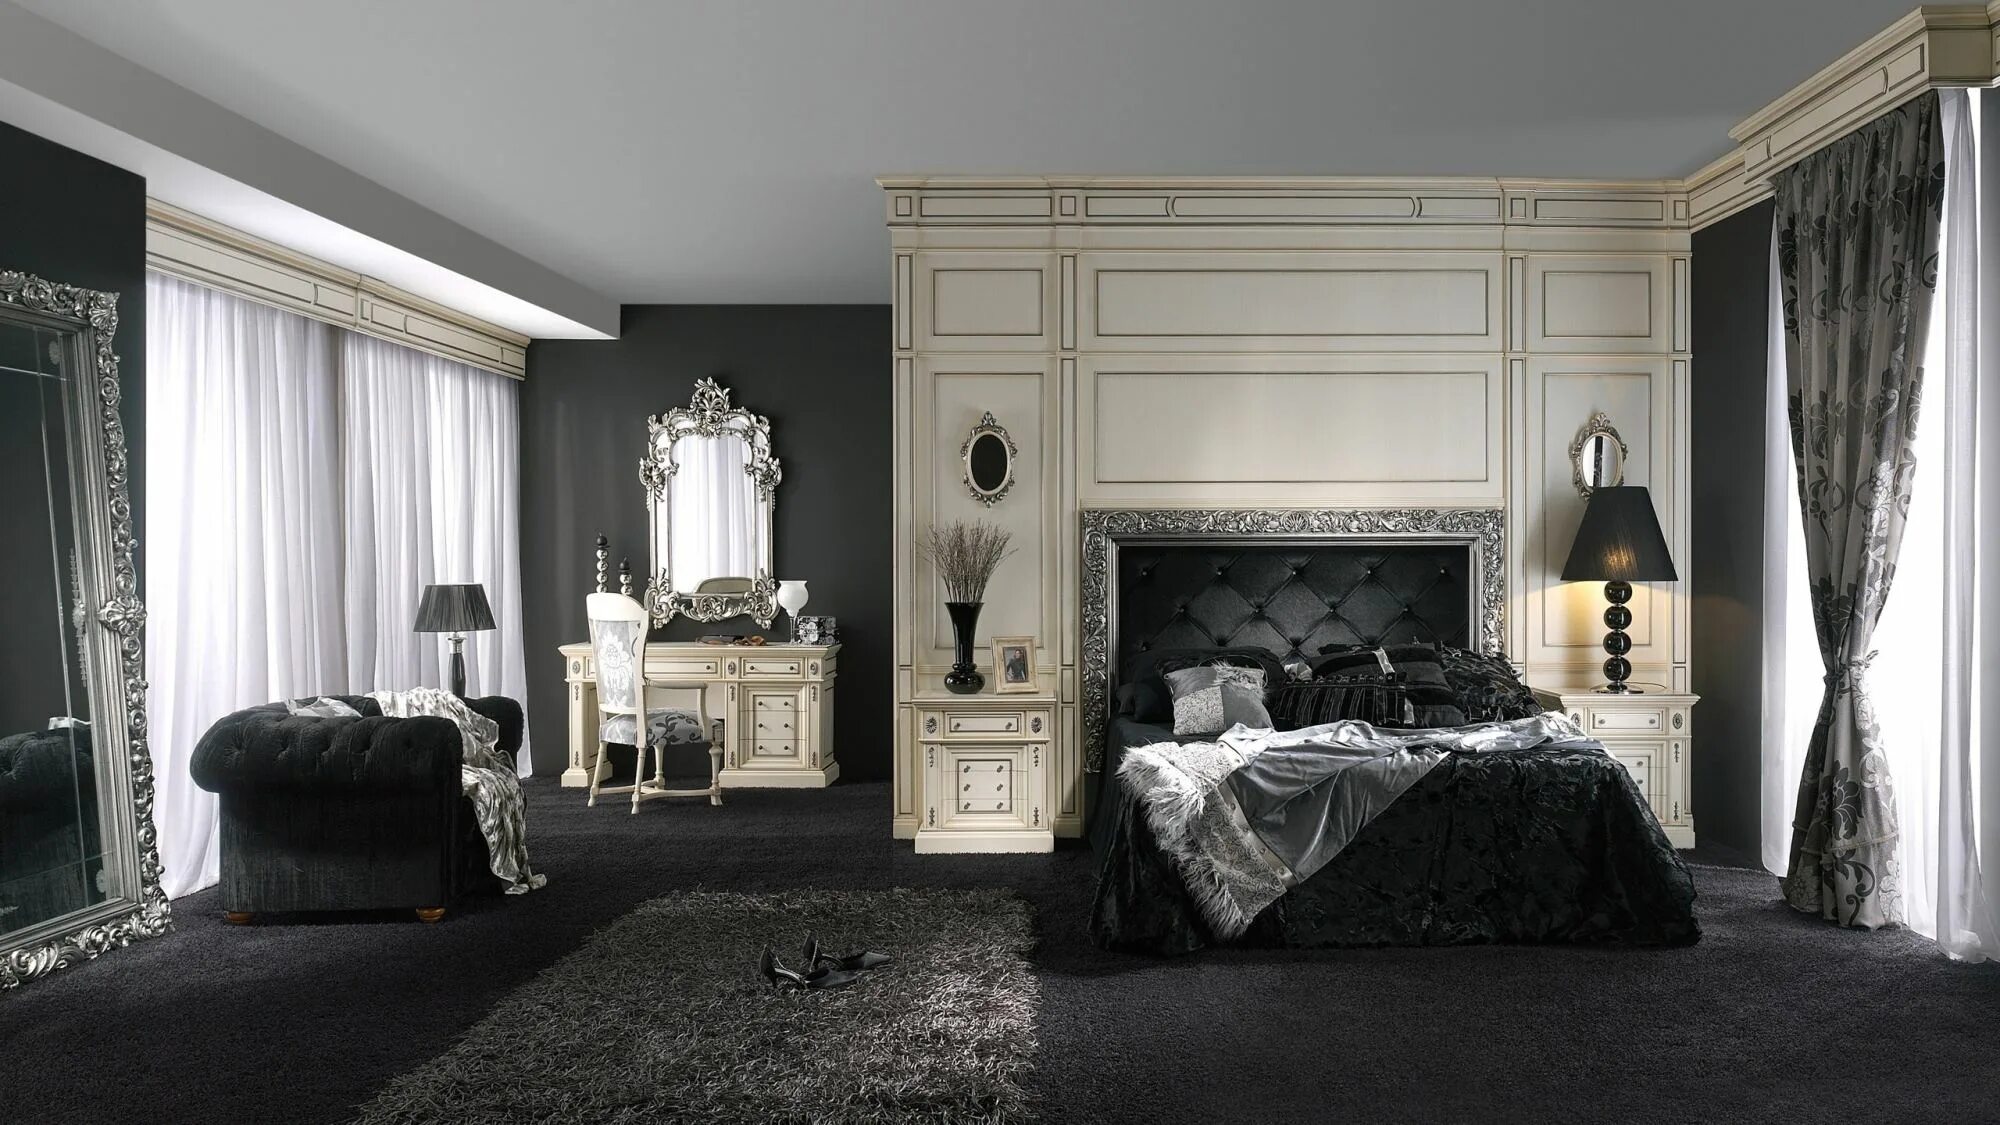 Классический комната мебель. Спальный гарнитур Версаче Италия. Спальня в стиле Ампир Барокко темная. Спальный гарнитур Версаче черный. Темная спальня Ампир.